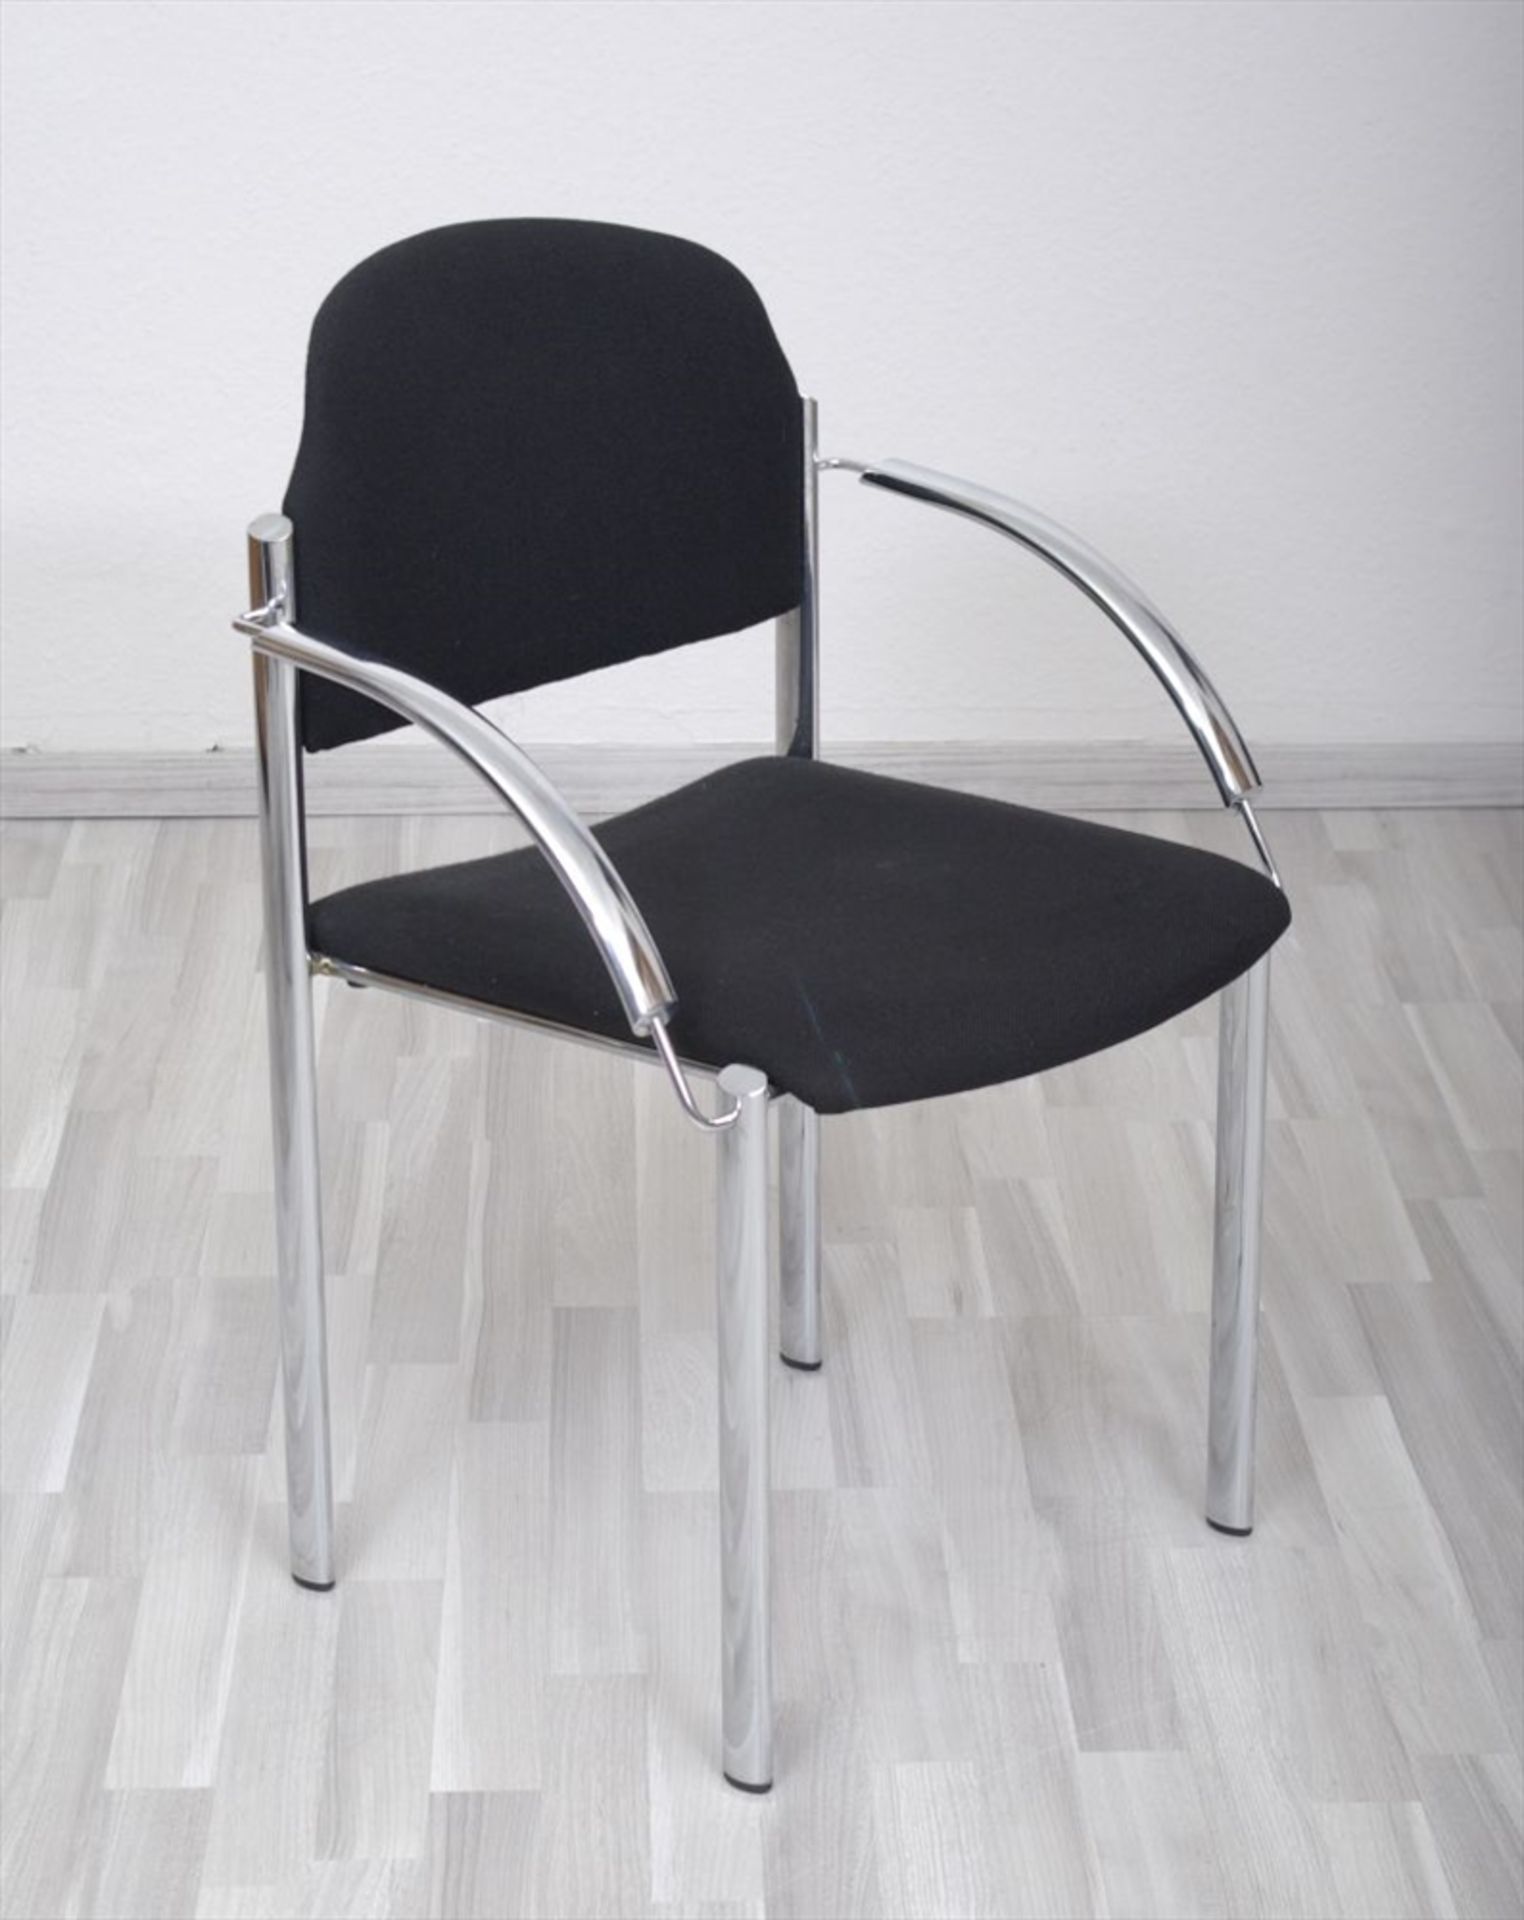 4 Stühle, Brune, verchromte Stahlbeine und Armlehnen, schwarzer Textilbezug, HxBxT: 83x57x57cm, - Bild 2 aus 2